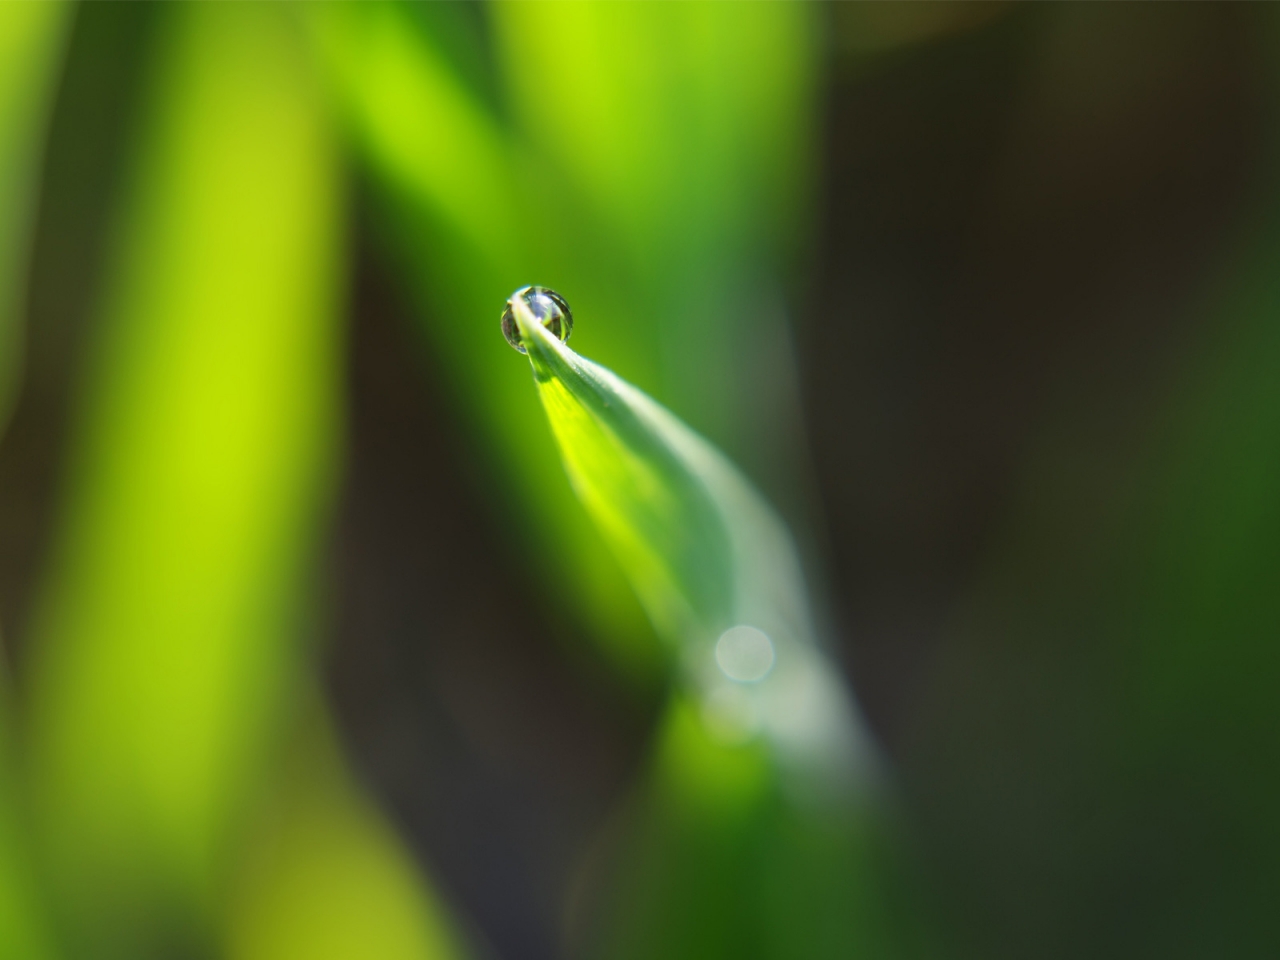 Dewdrop on leaf for 1280 x 960 resolution